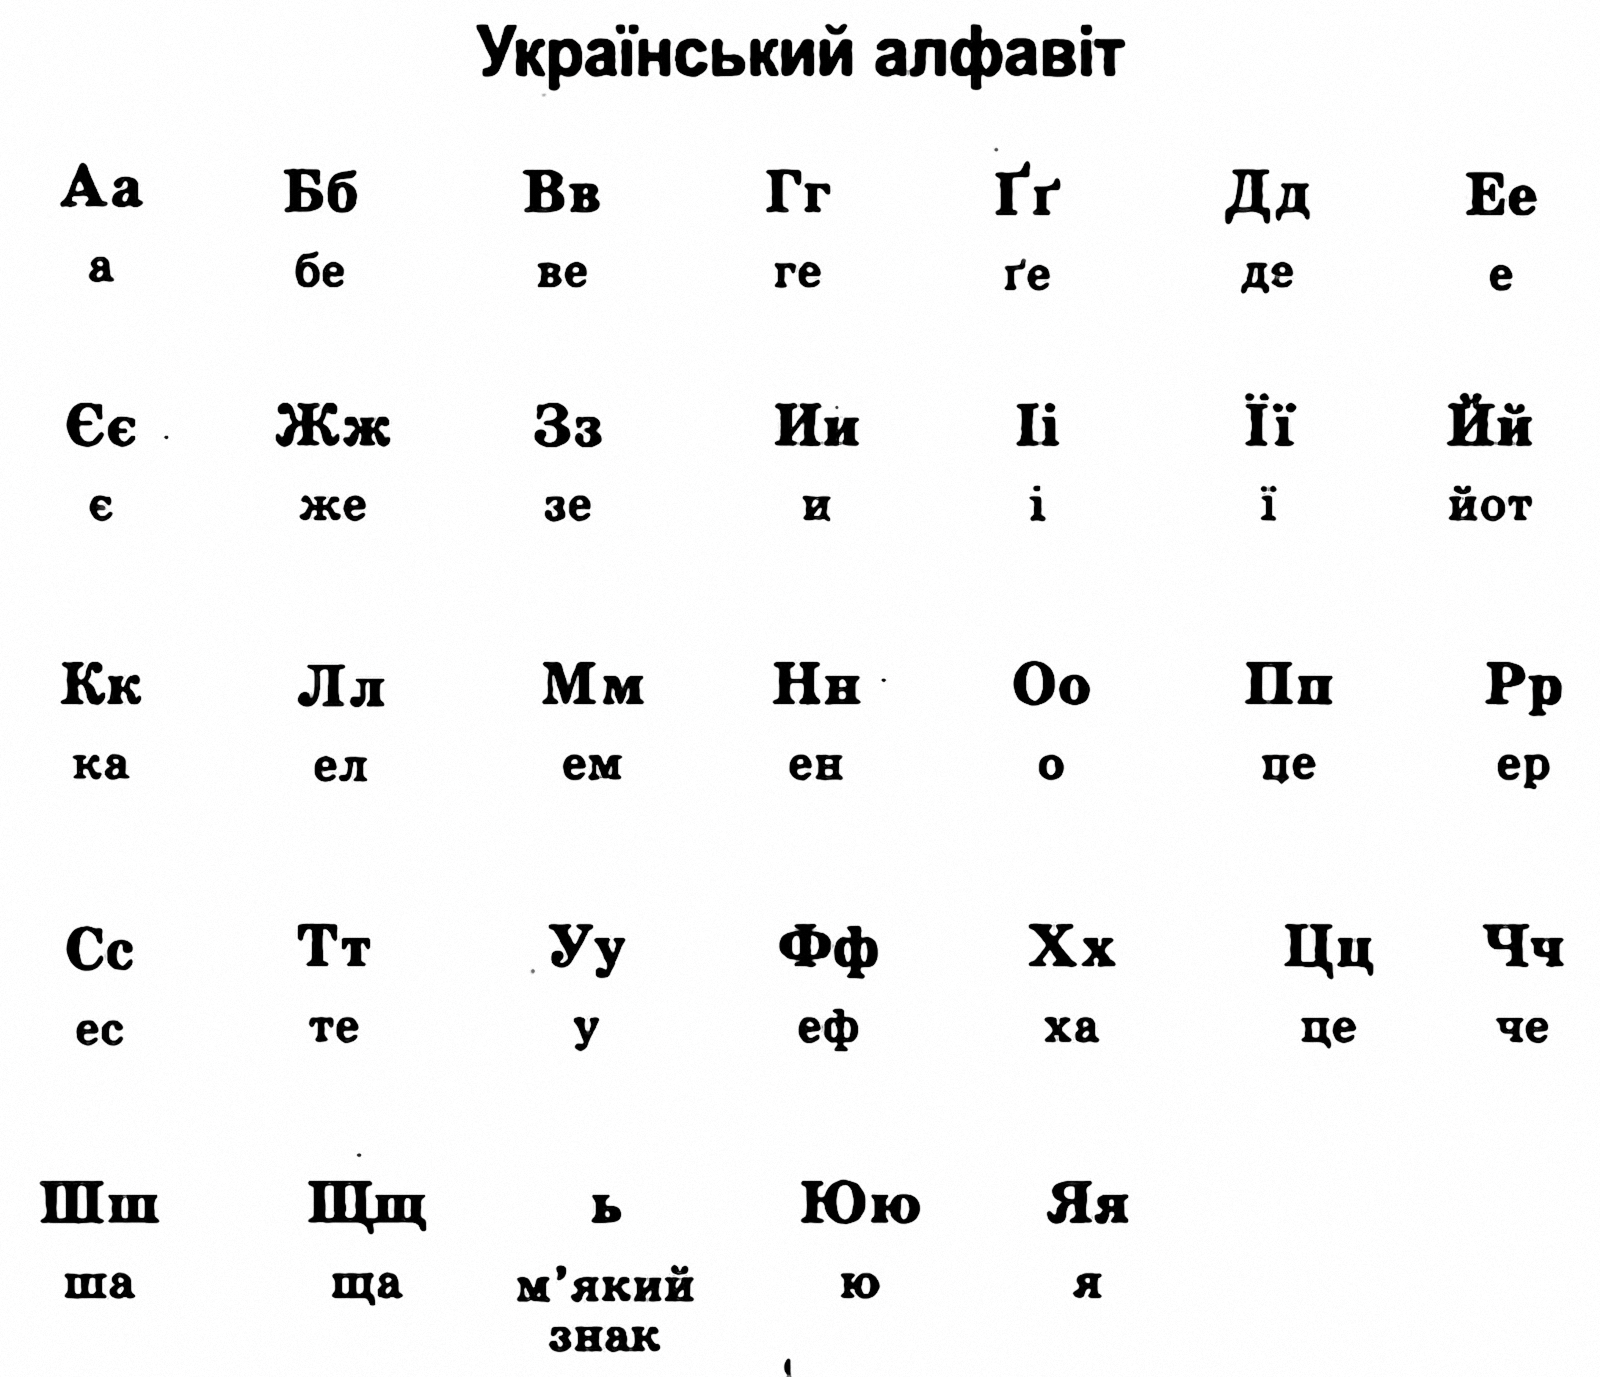 Украинский алфавит с произношением на русском. Украинский алфавит с транскрипцией. Украинский алфавит с переводом на русский. Укр алфавіт таблиця. Украинский язык алфавит произношение на русском.